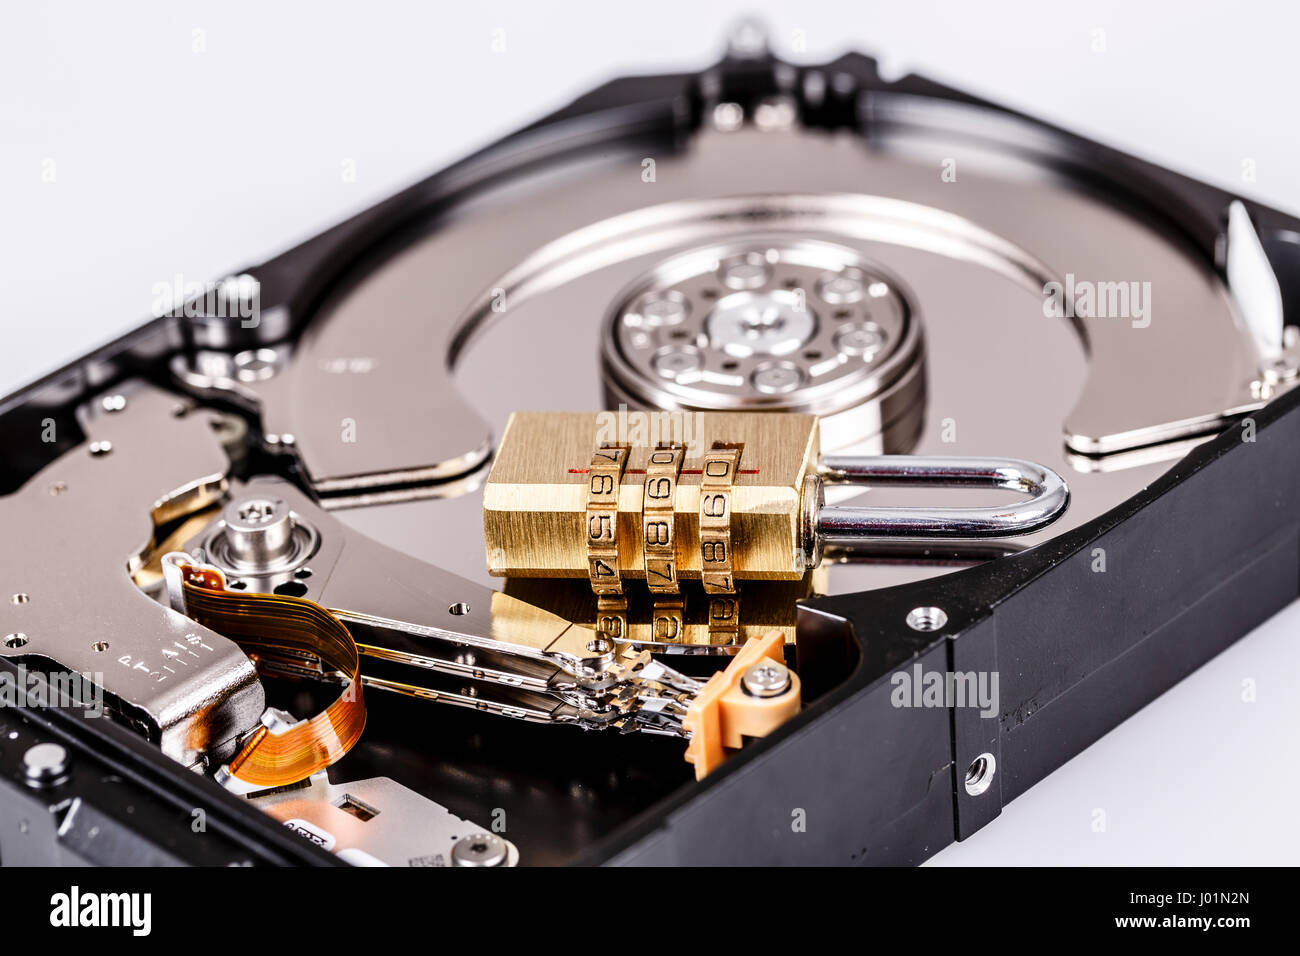 Bloqueo de disco duro o disco duro, parte del equipo, el concepto de seguridad cibernética, privacidad de los datos Fotografía de stock - Alamy